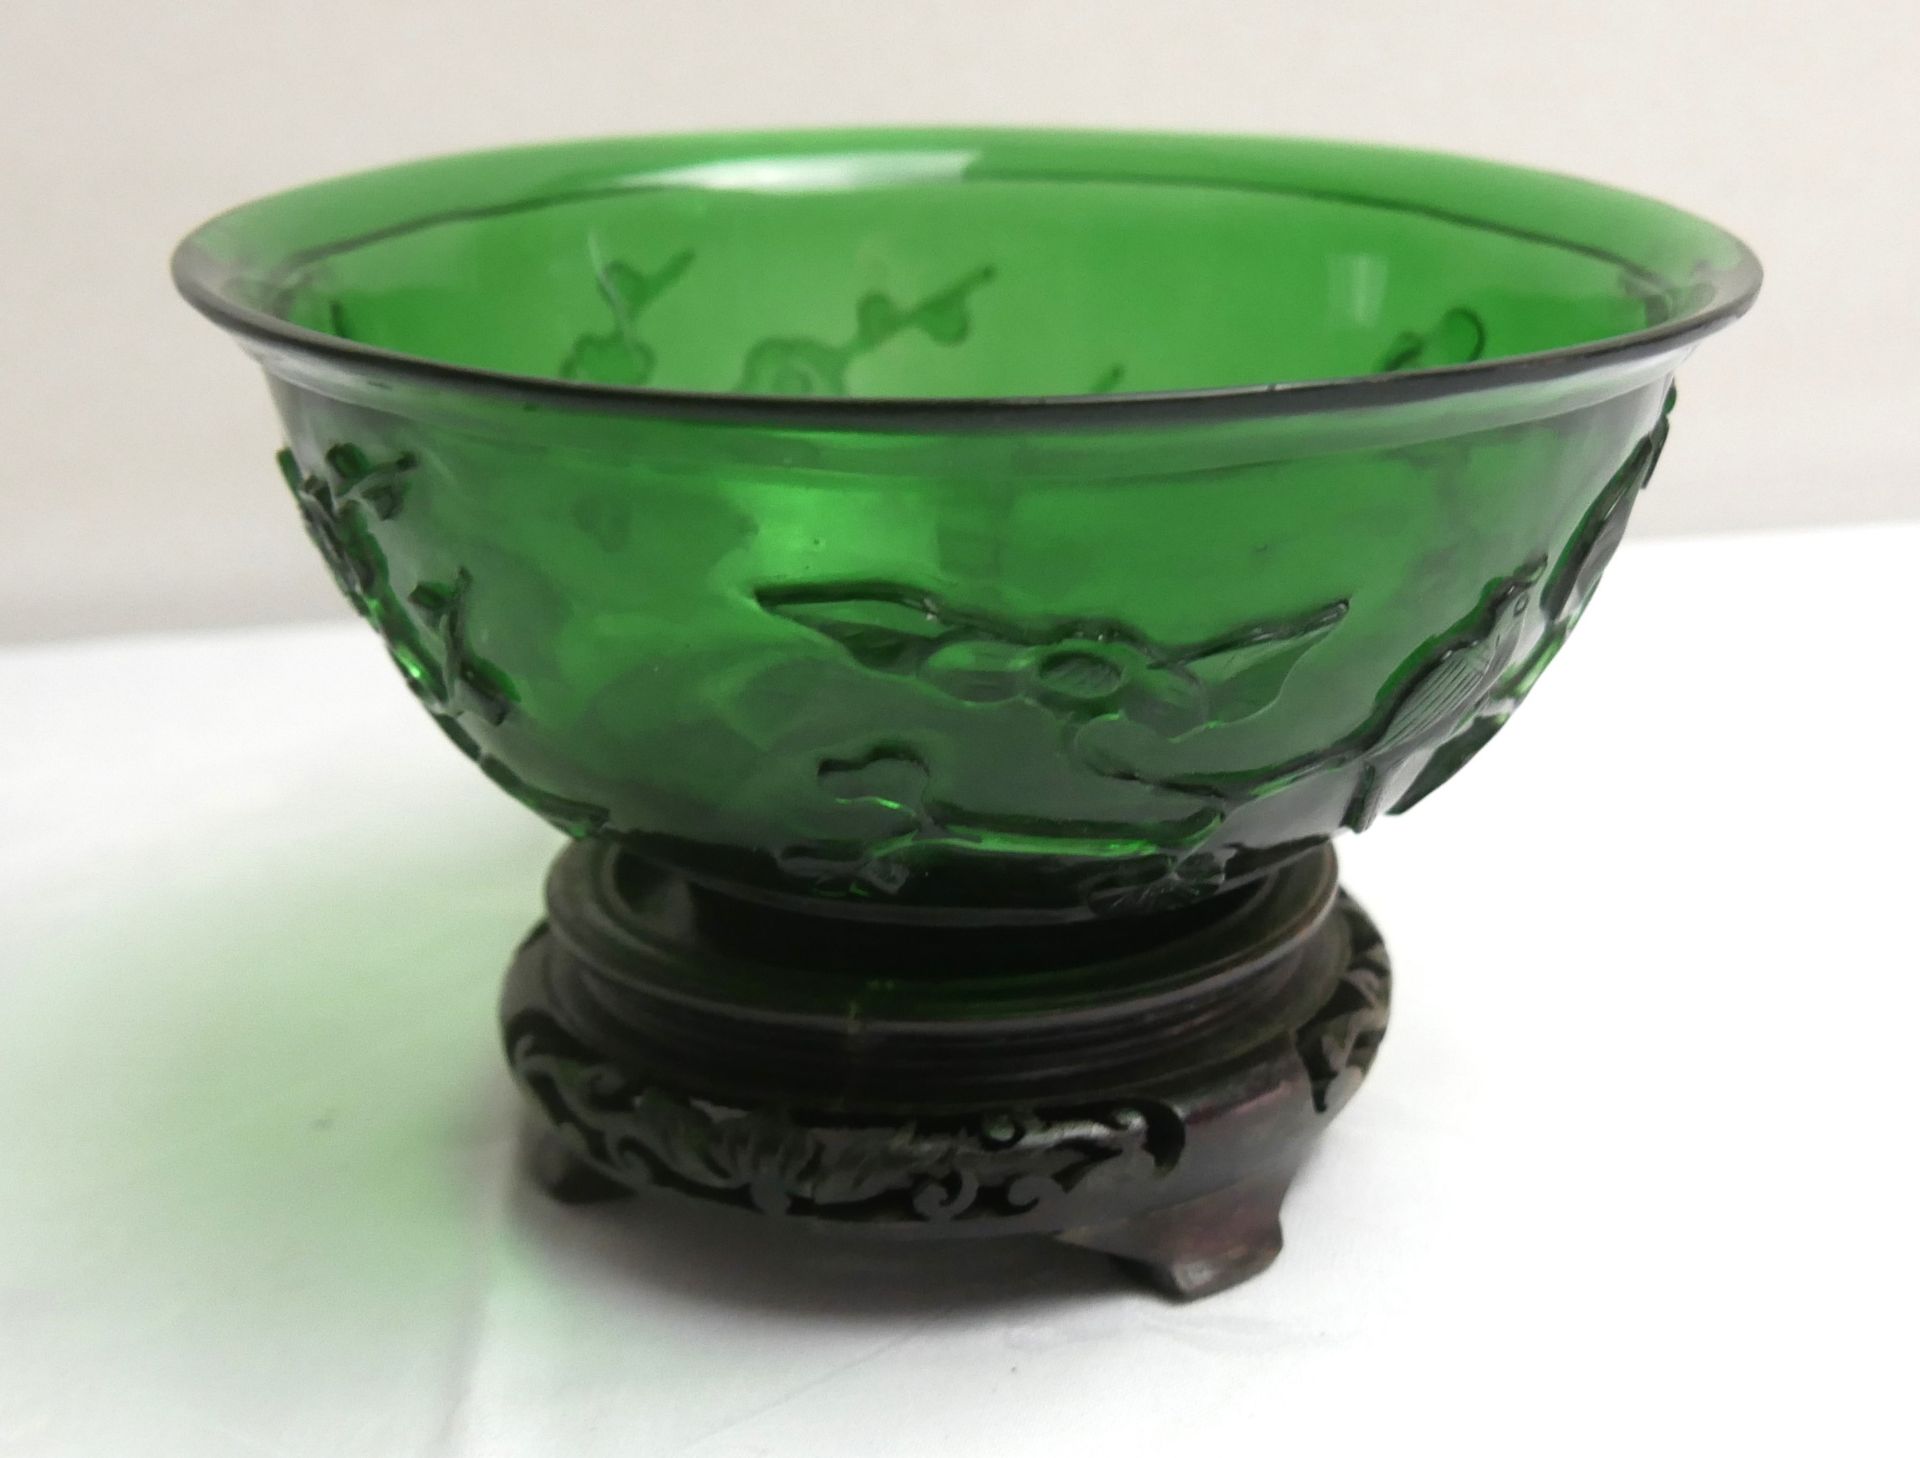 1 Glasschale China, grünes Glas teilweise erhöht, aus Sammlung auf Holzpodest. Durchmesser ca. 16